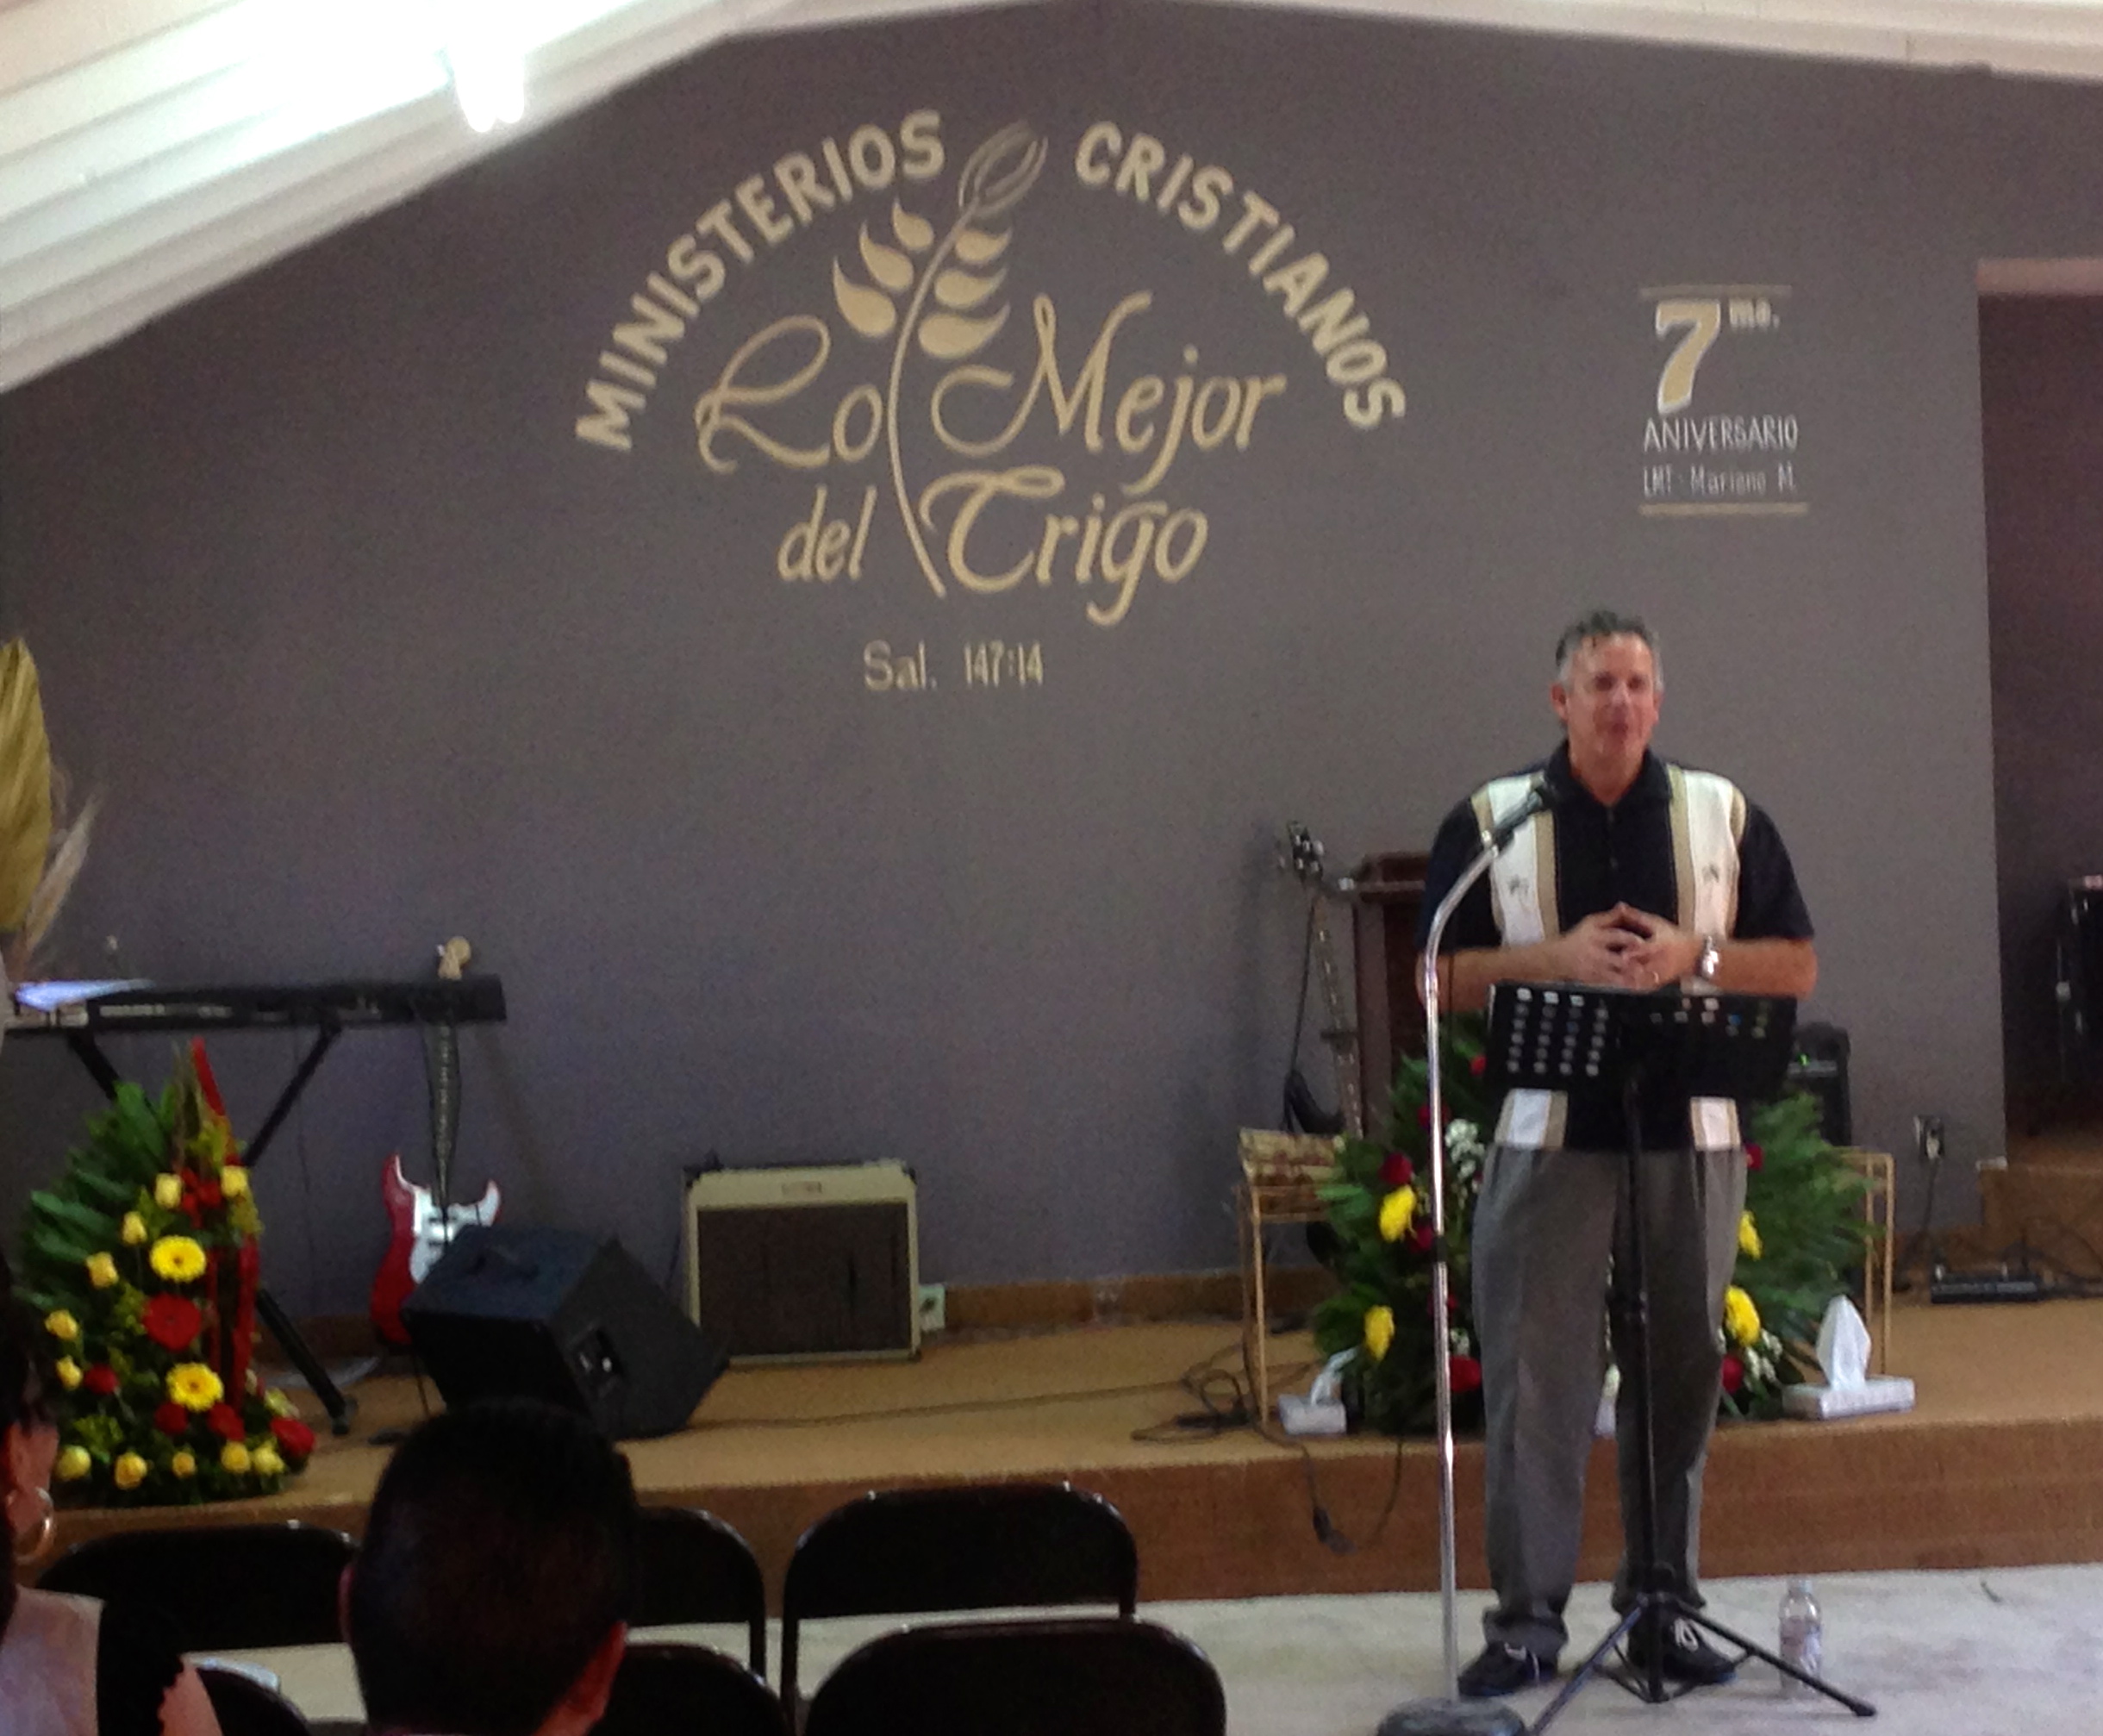 Dave preaching at Lo Mejor del Trigo